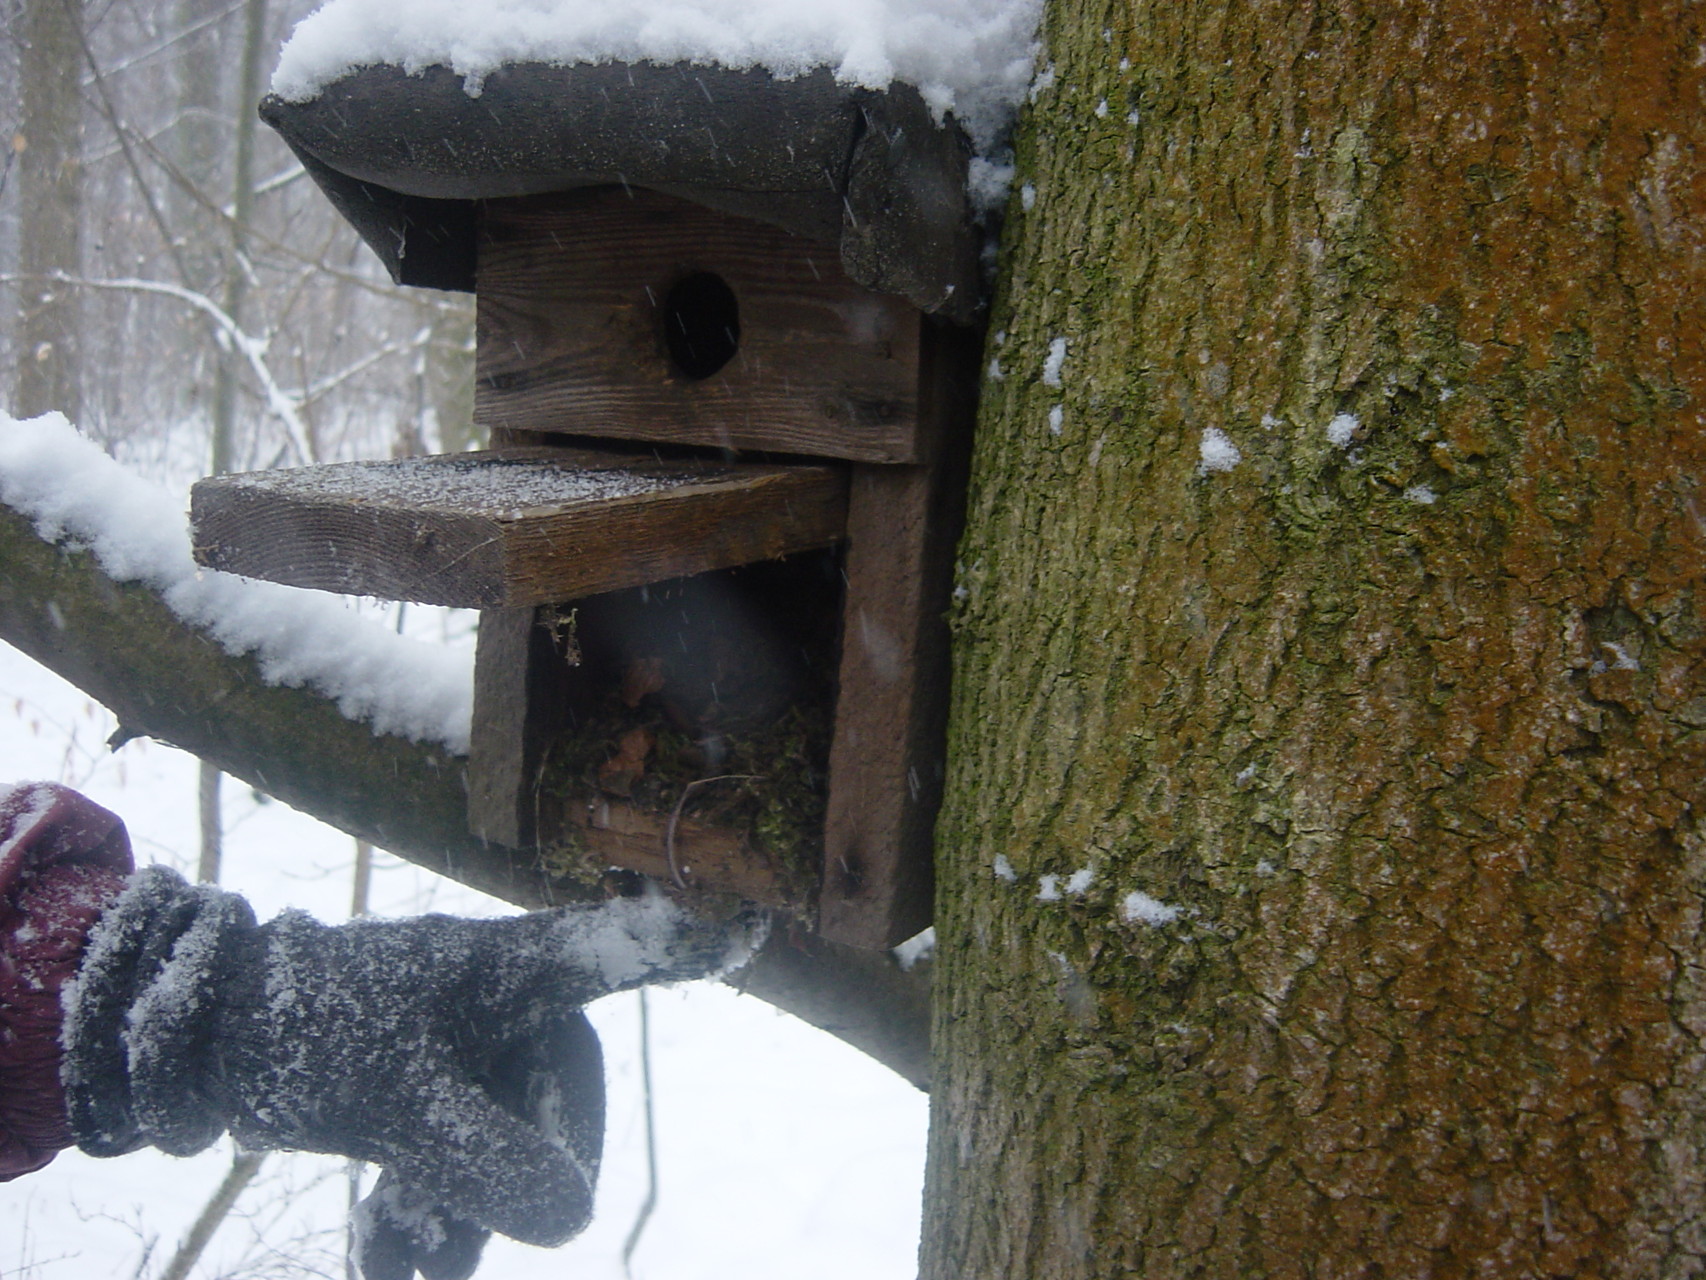 Einige ältere Nistkästen wurden offenbar nicht von Vögeln bewohnt, sondern zum Beispiel von Mäusen, die es sich in der kalten Jahreszeit in den Bruthilfen gemütlich eingerichtet hatten. Foto: Mario Vormbaum